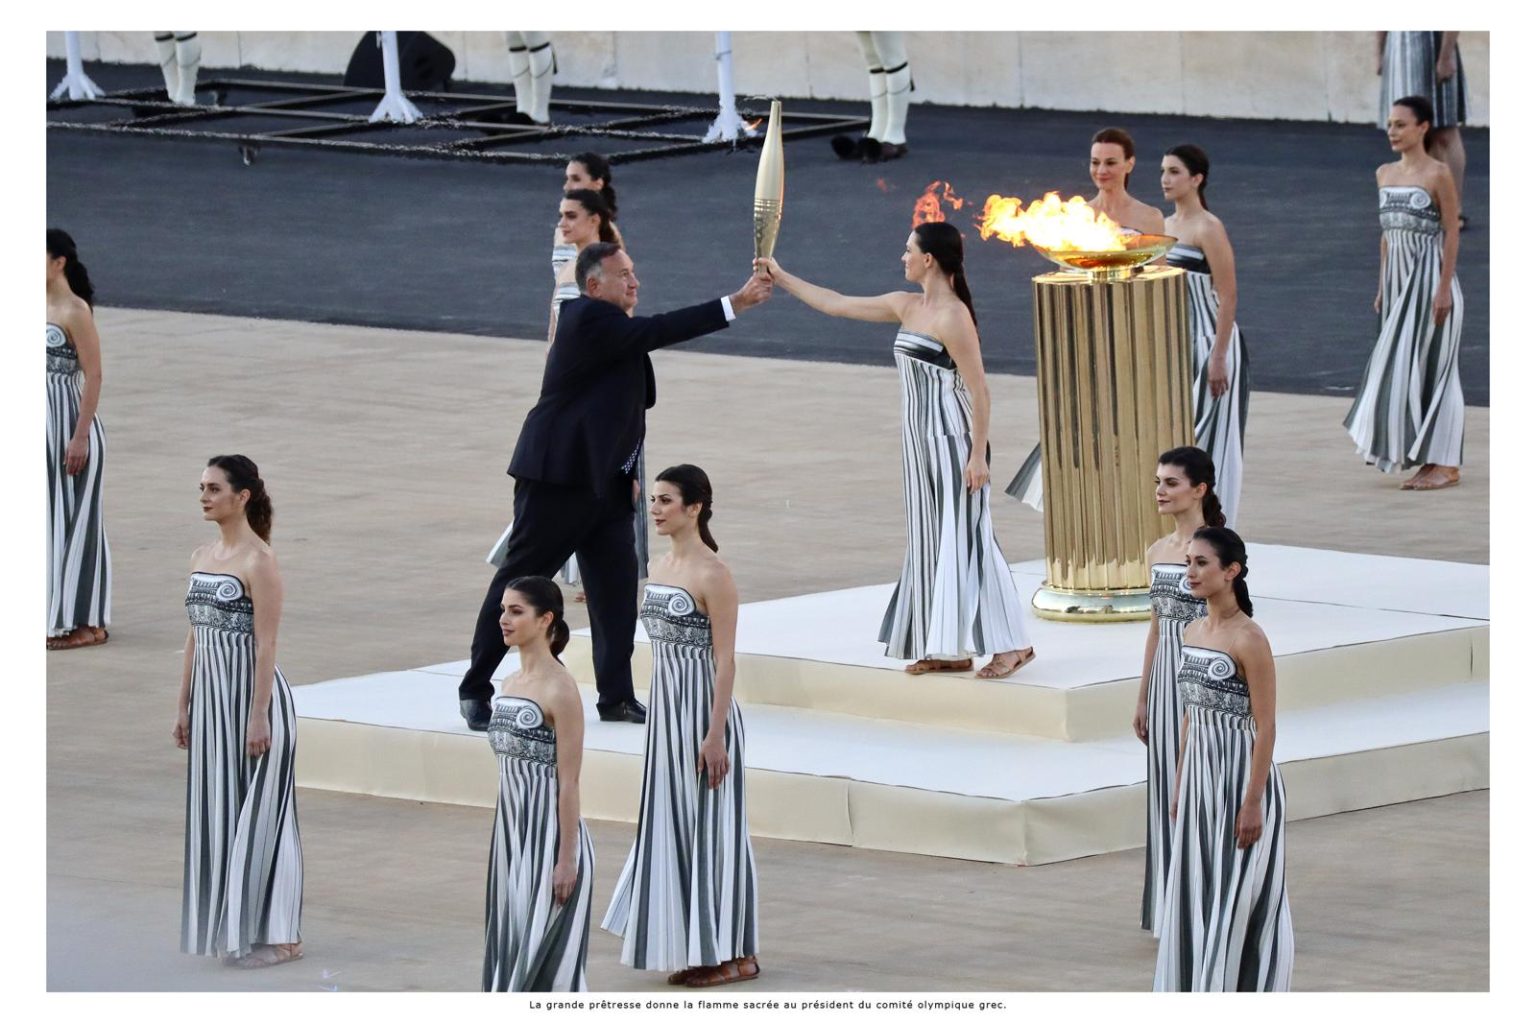 La grande prêtresse donne la flamme sacrée au président du comité olympique grec.